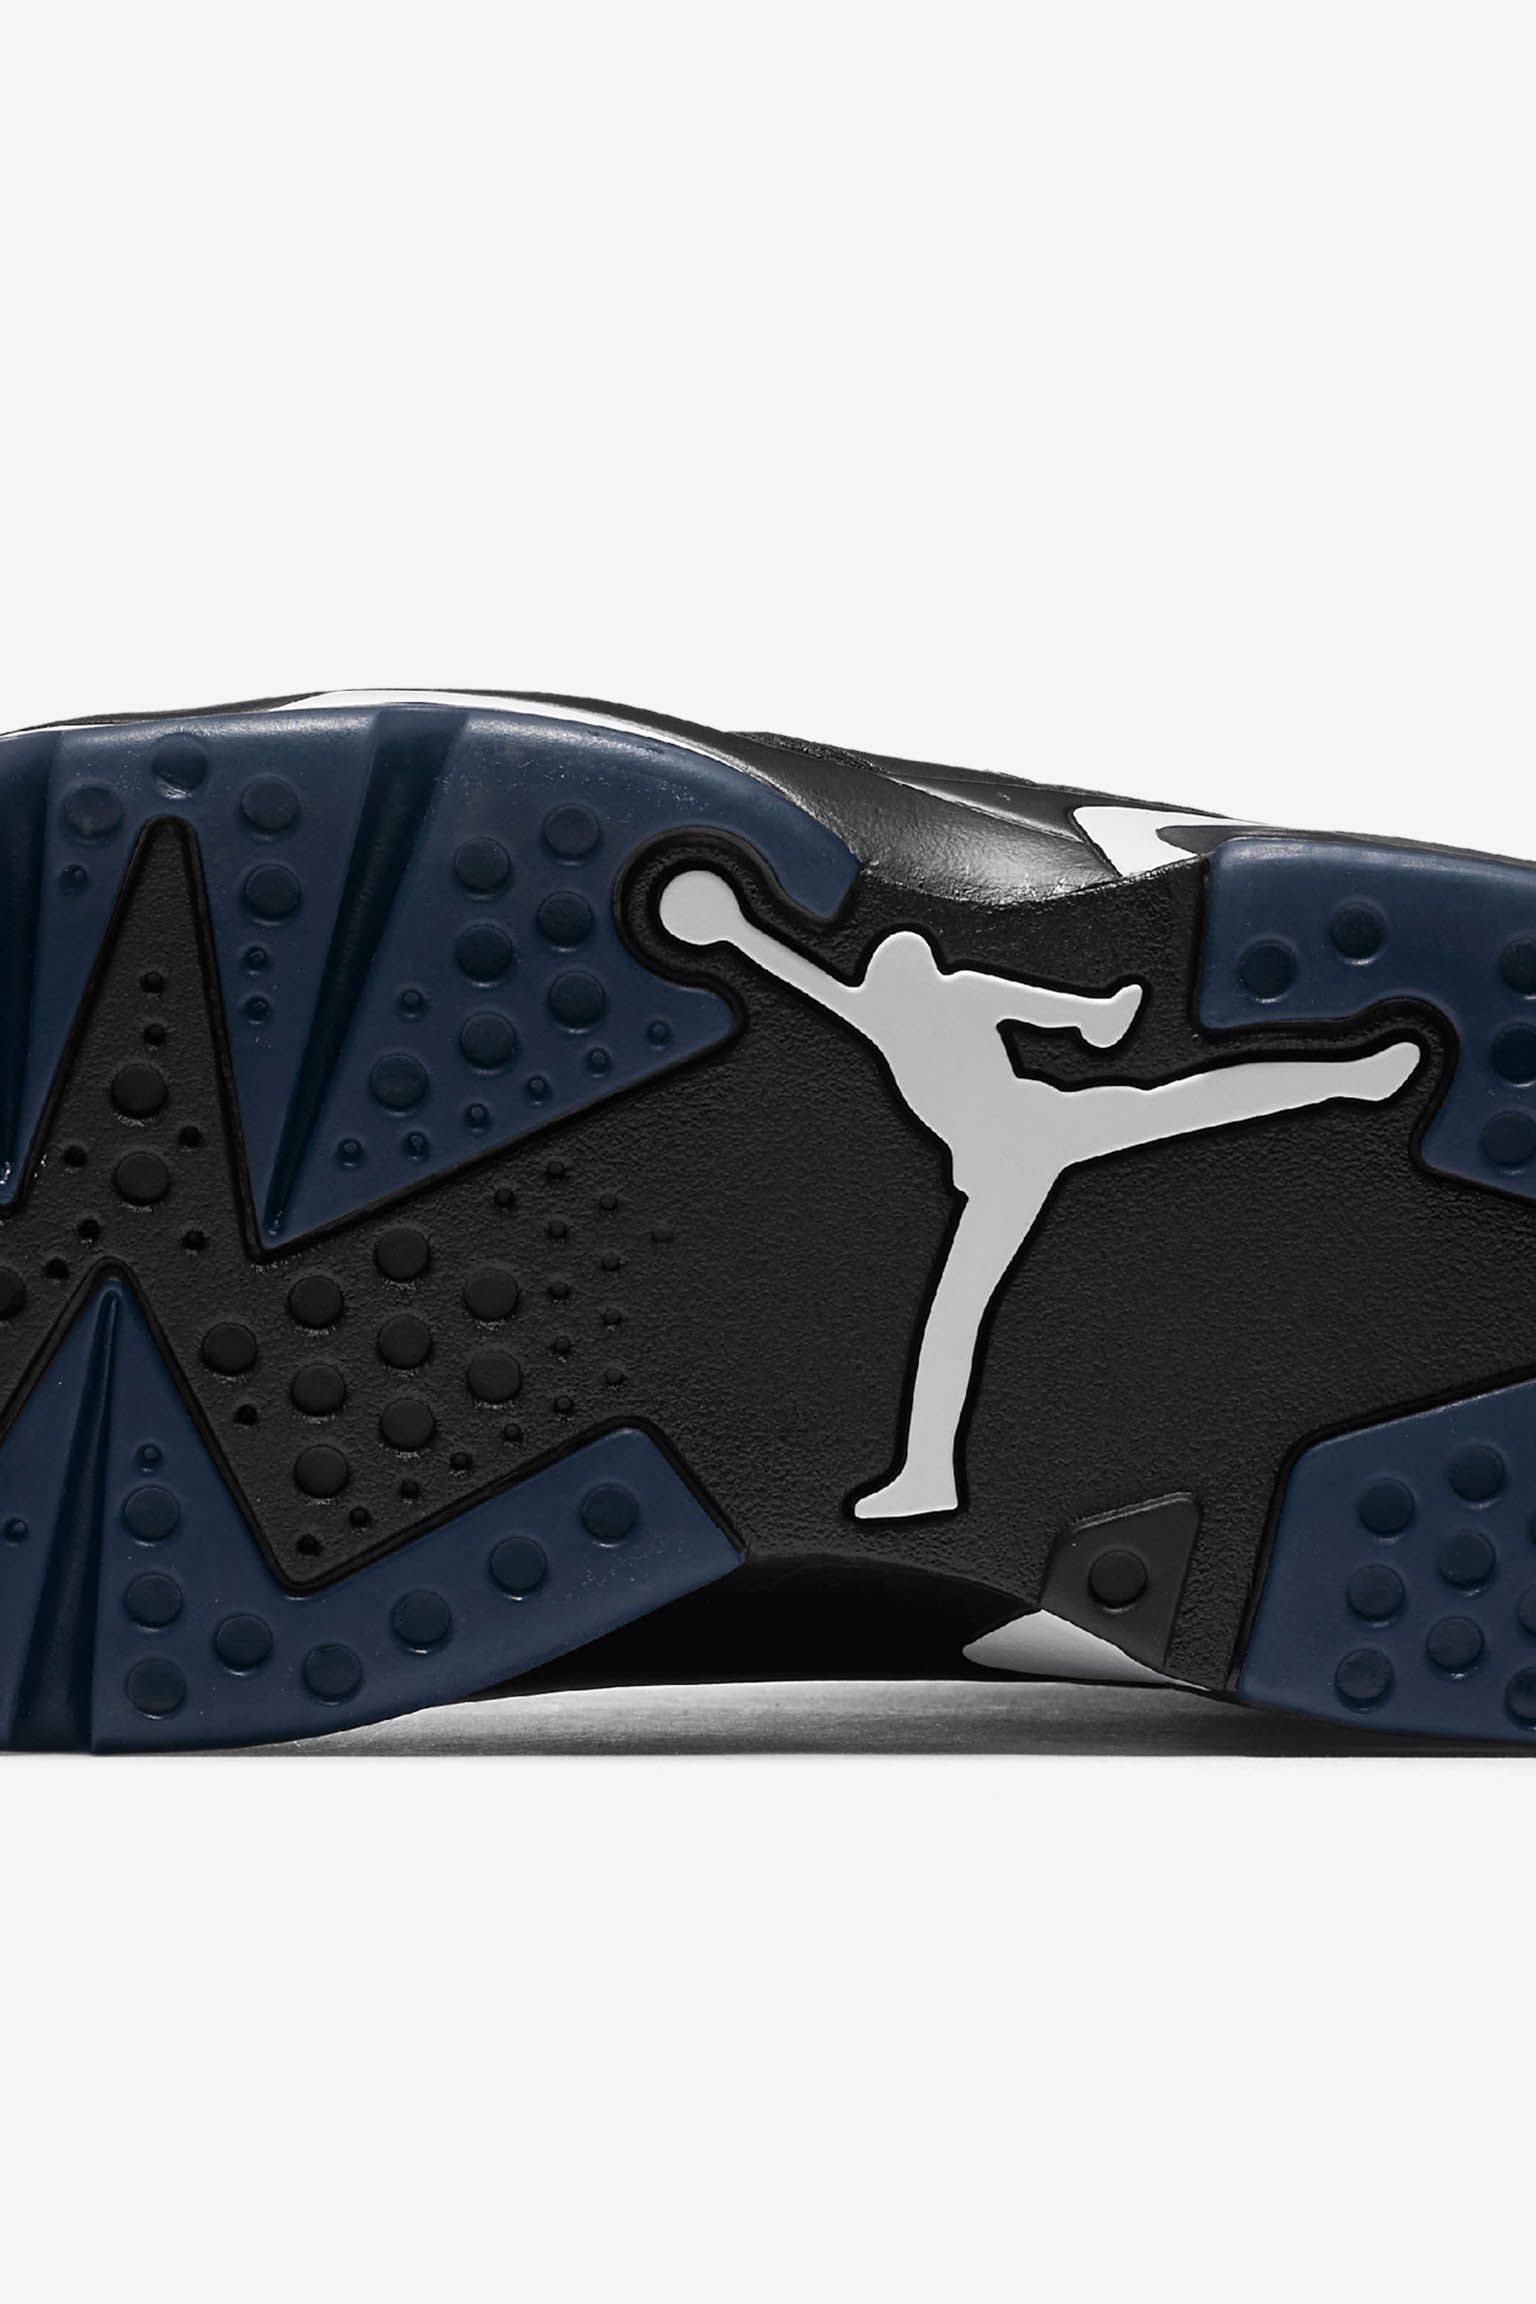 Padre semilla Descortés Air Jordan 6 Retro "Black". Nike SNKRS ES